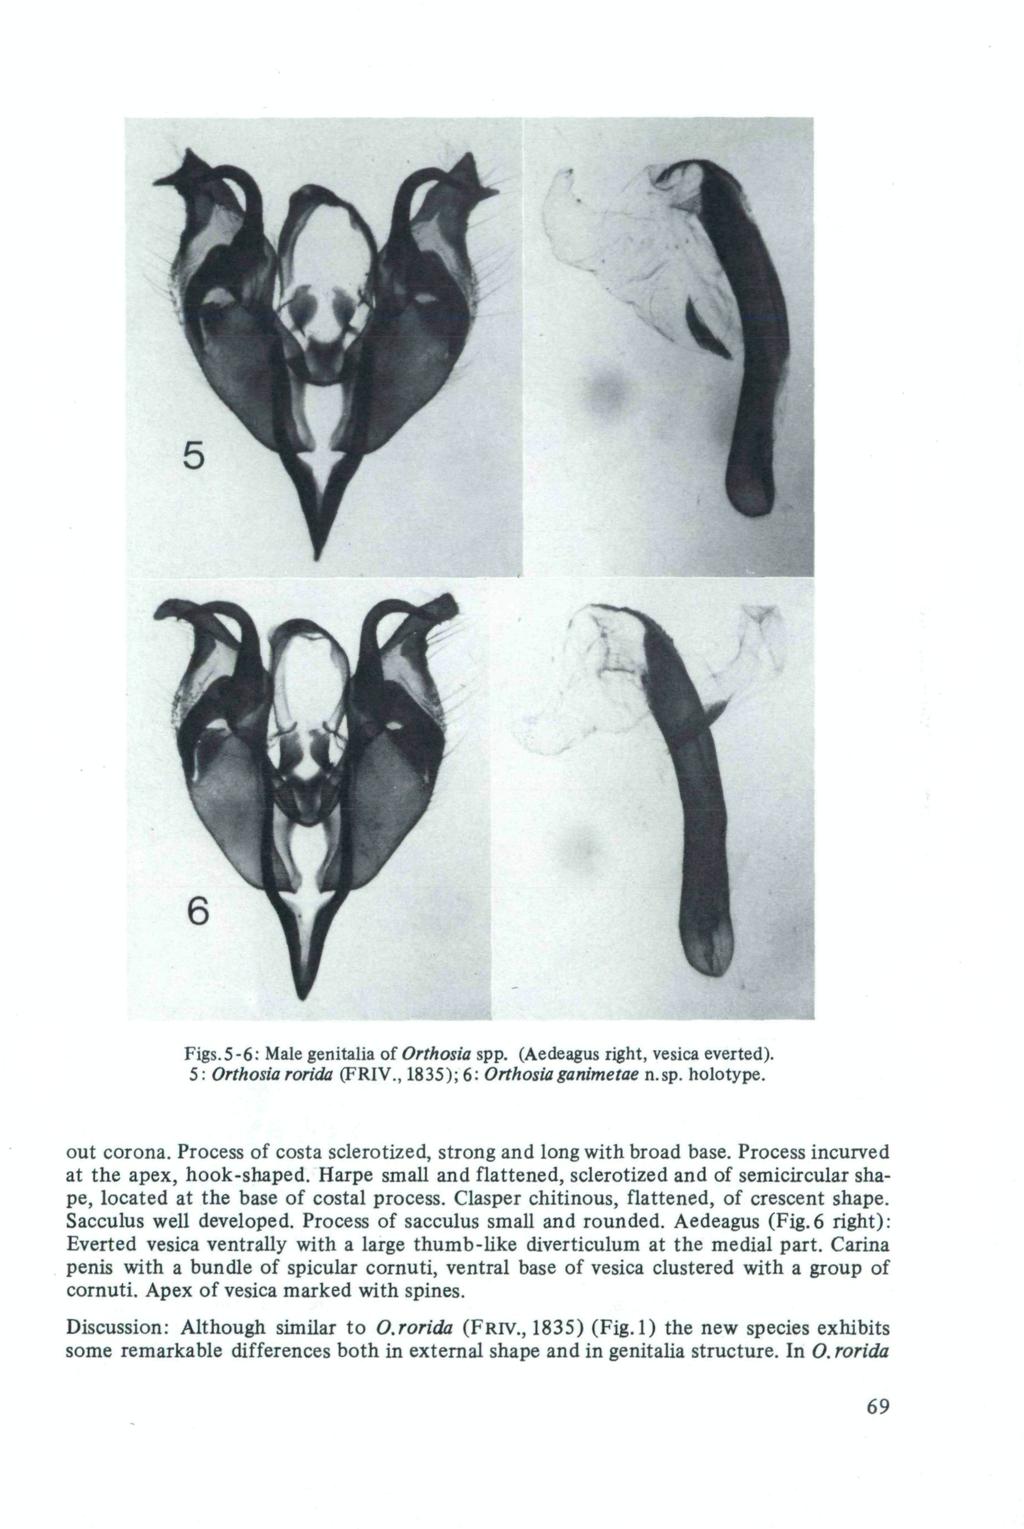 Figs.5-6: Male genitalia of Orthosia spp. (Aedeagus right, vesica everted). 5 : Orthosia rorida (FRIV., 1835); 6: Orthosiaganimetae n.sp. holotype. out corona.